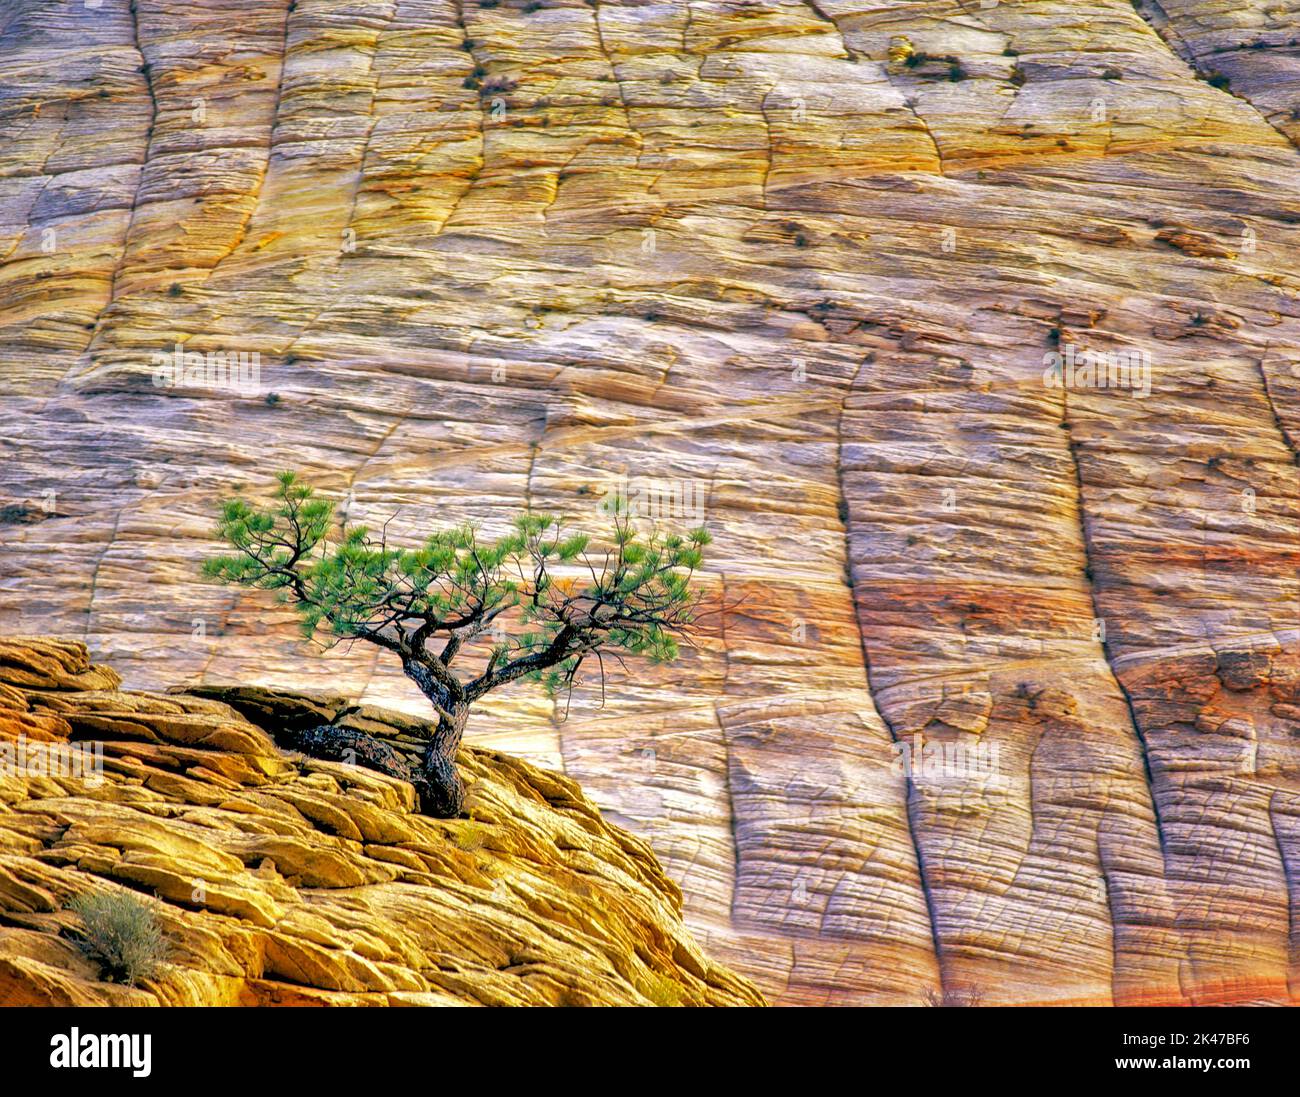 Lone Ponderosa Pine tree in sandstone cliff. Zion National Park, Utah Stock Photo